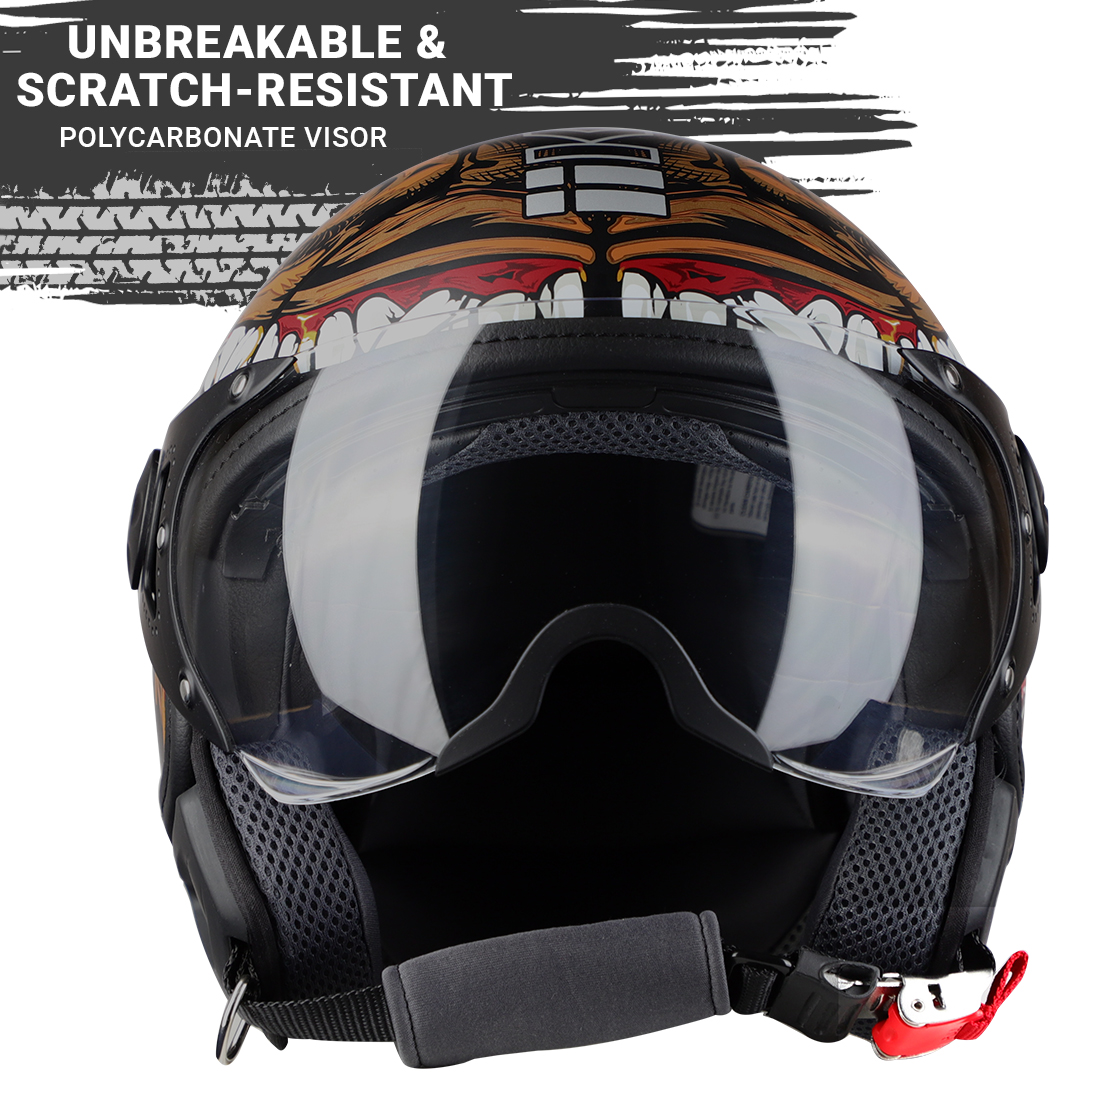 Steelbird Kukka K-2 VALEC ISI Certified Open Face Helmet (Matt Black Desert Storm)